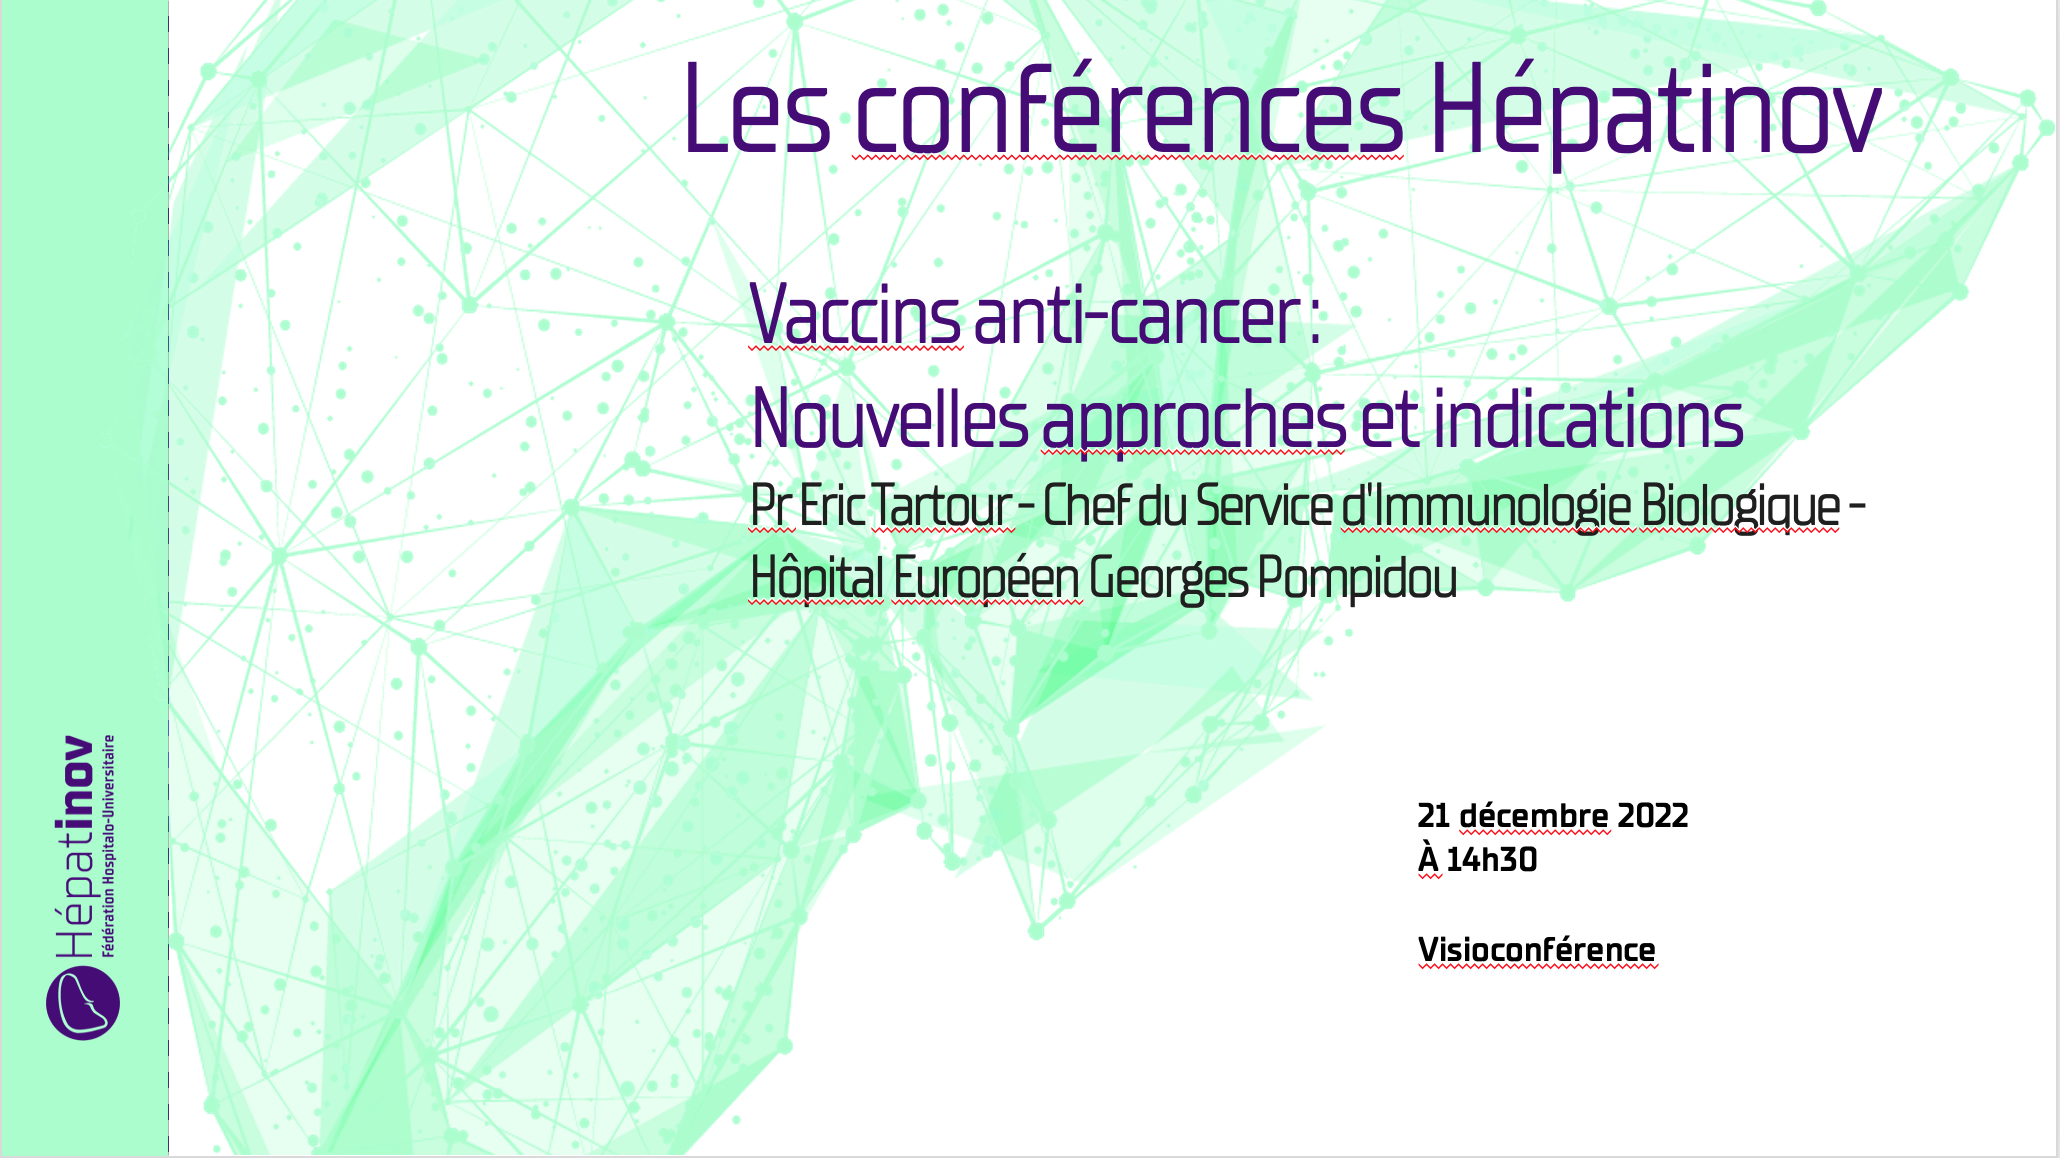 Les conférences Hépatinov - Vaccins anti-cancer: nouvelles approches et indications - 21 décembre 2022